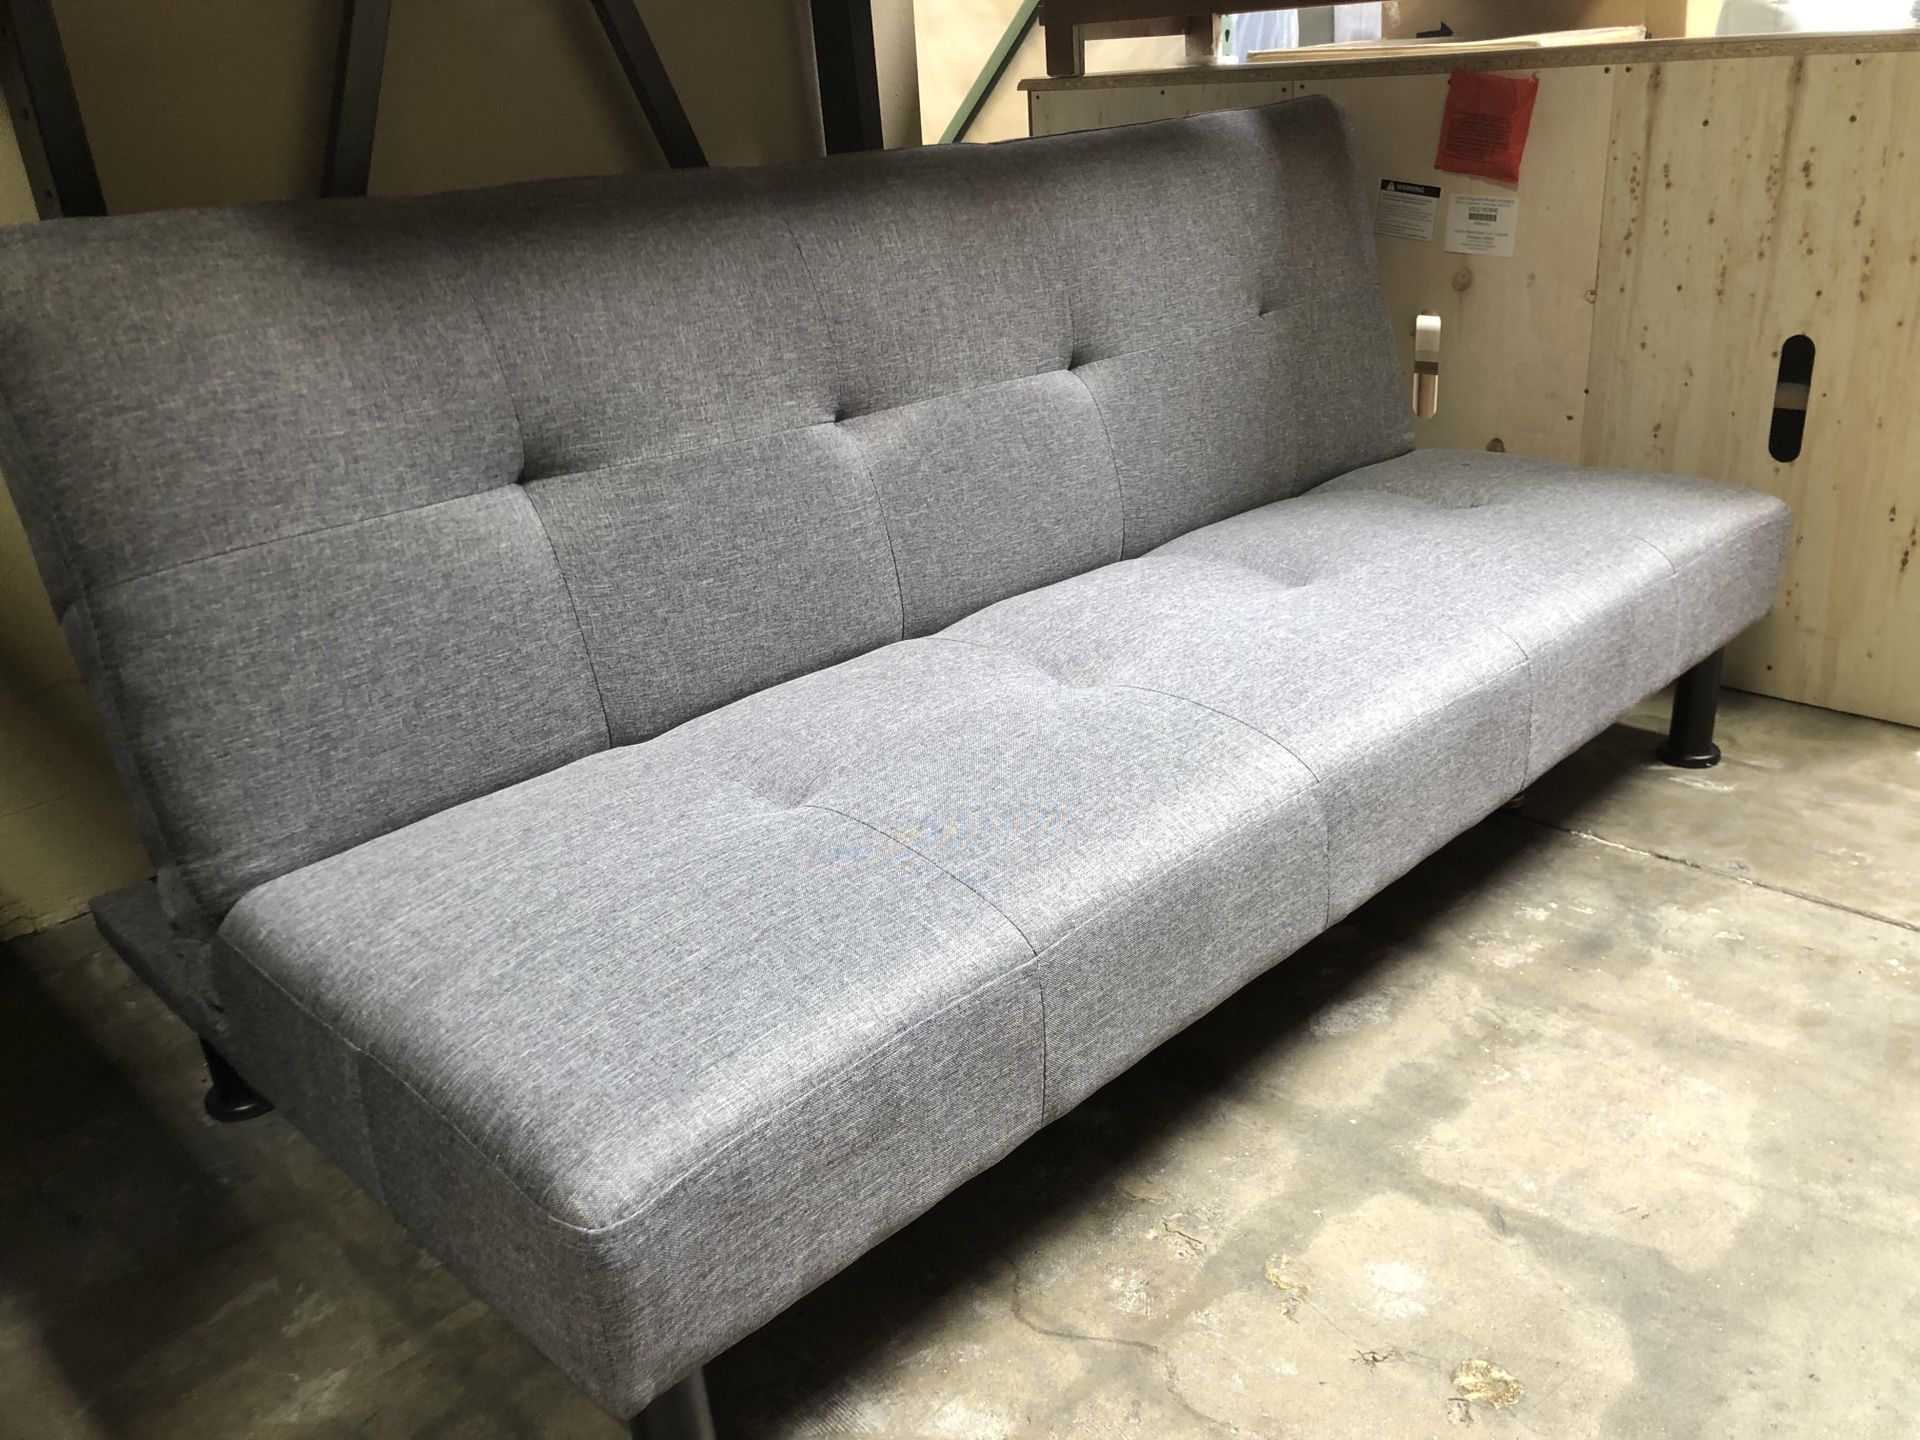 🔥New! Comfy sofa bed sleeper futon